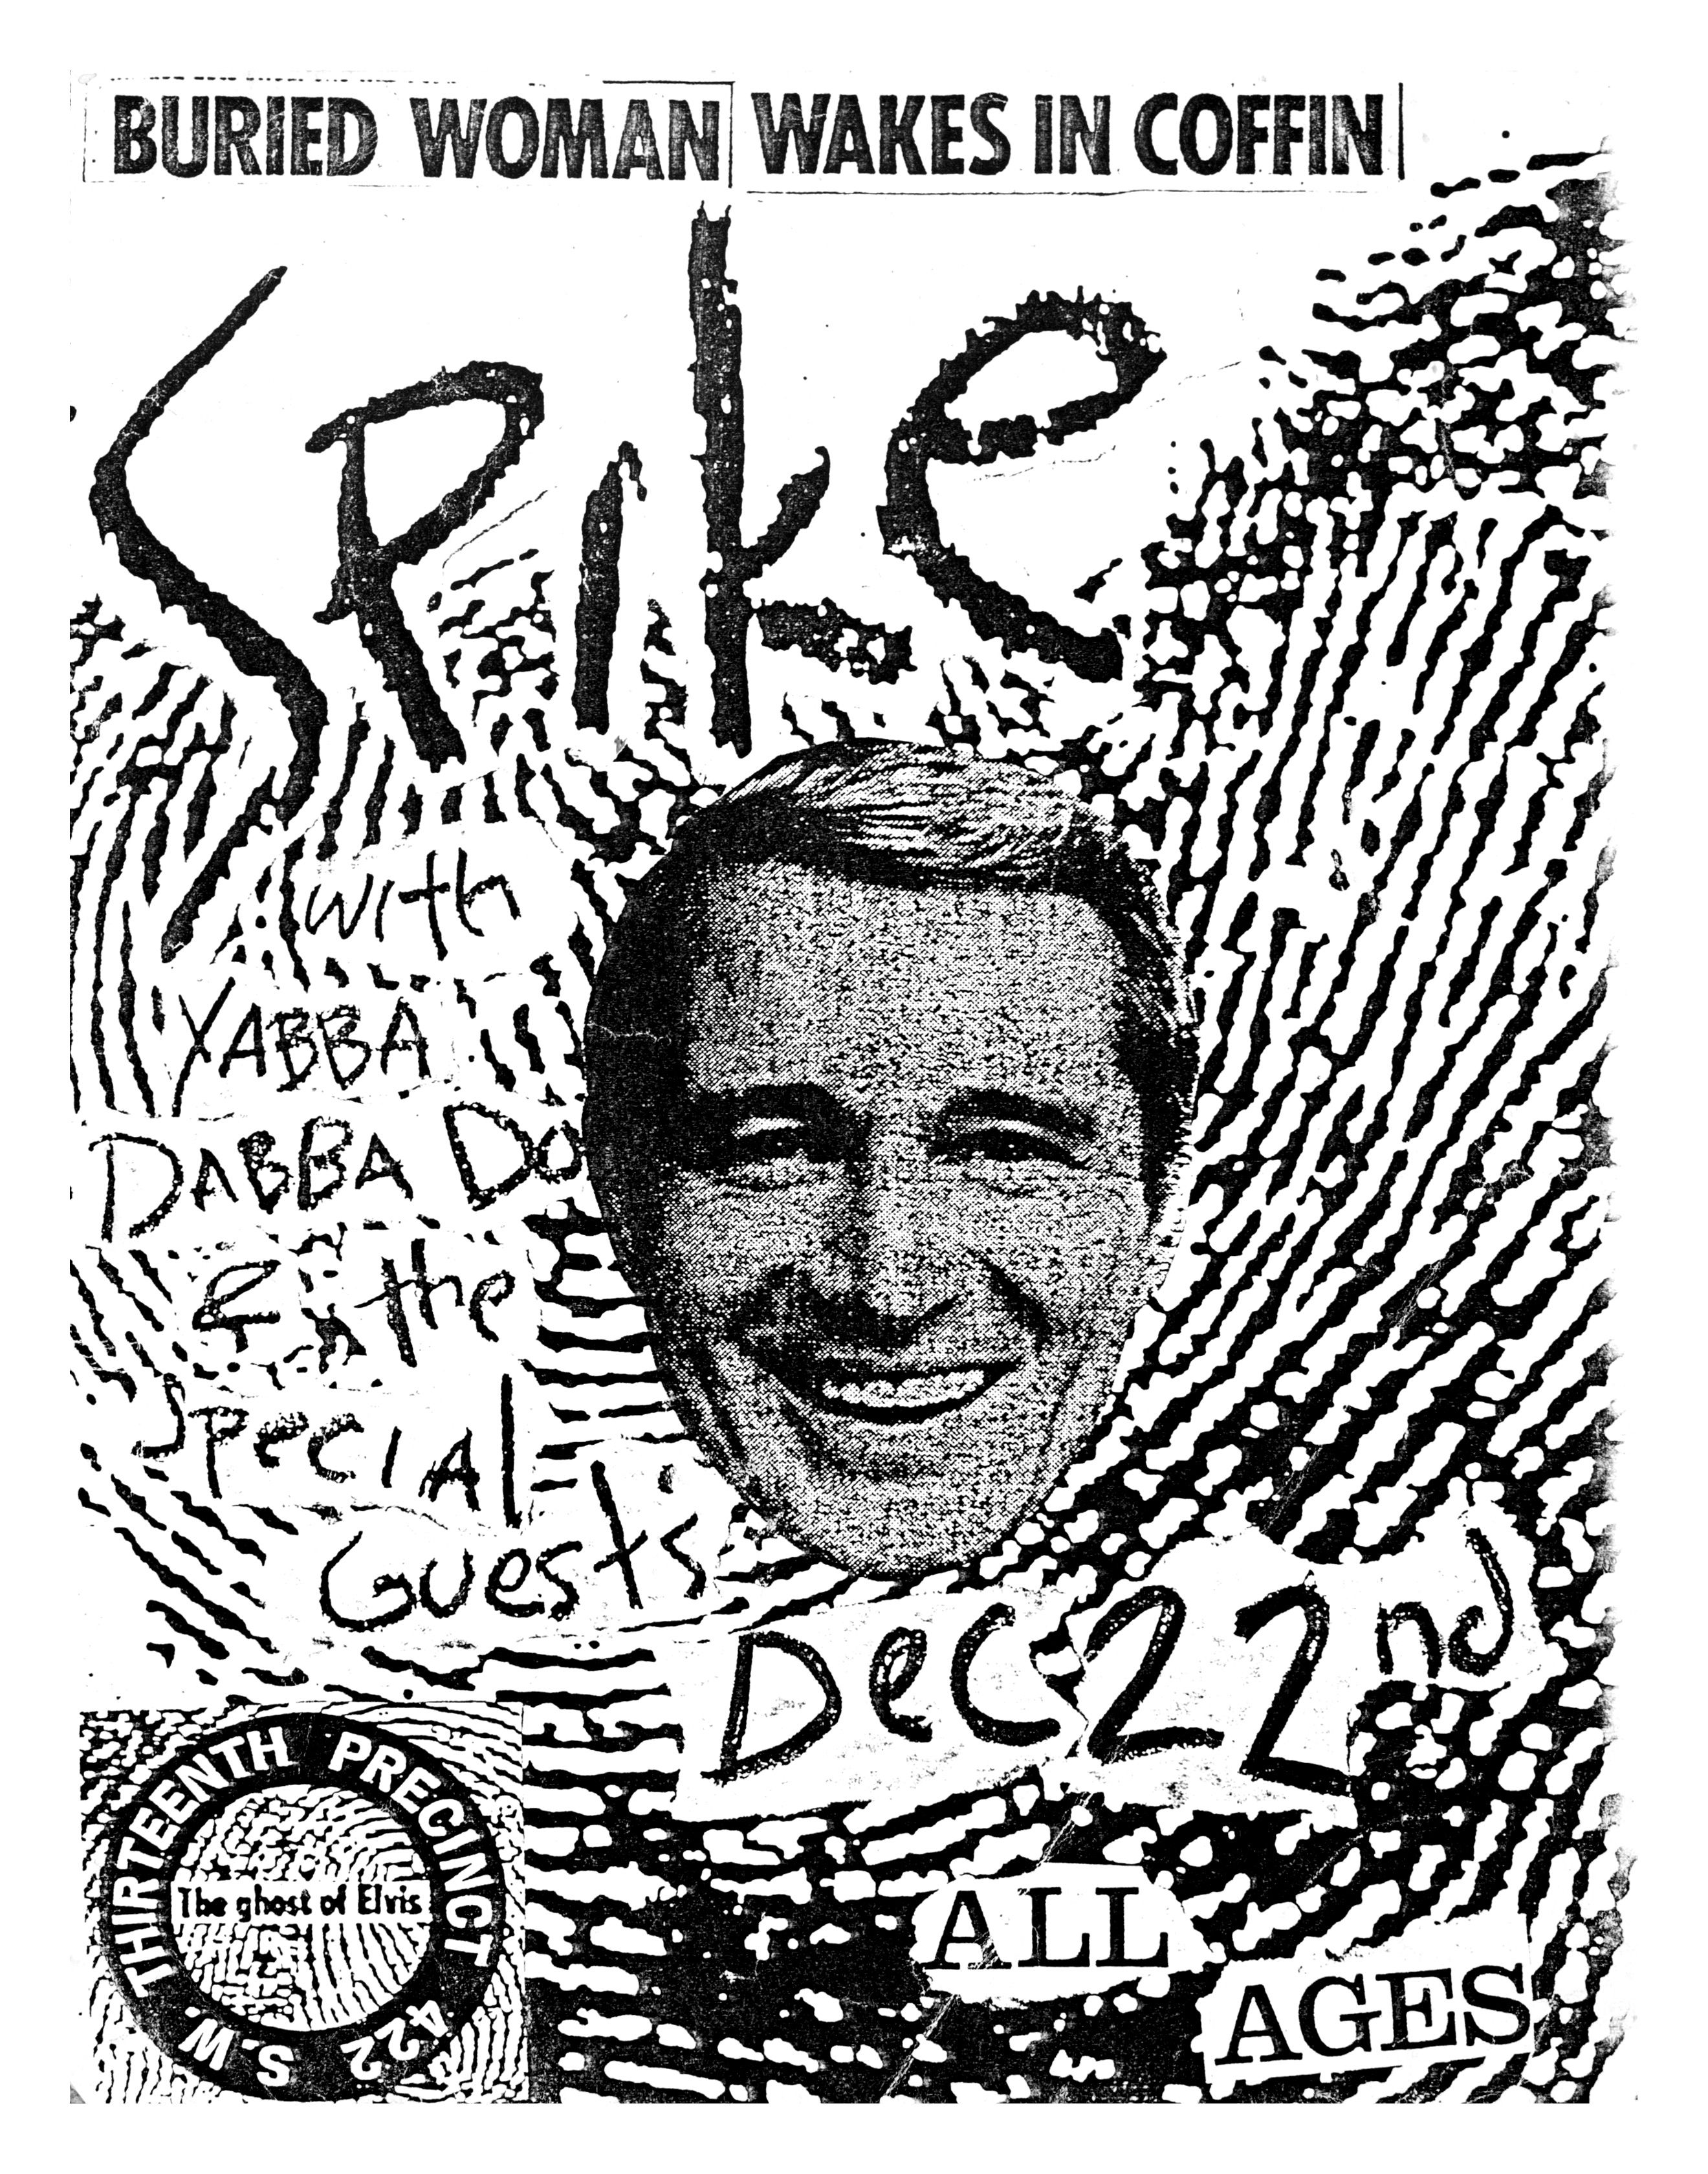 MXP-45.4 Spike 1983 13th Precinct  Dec 22 Concert Poster